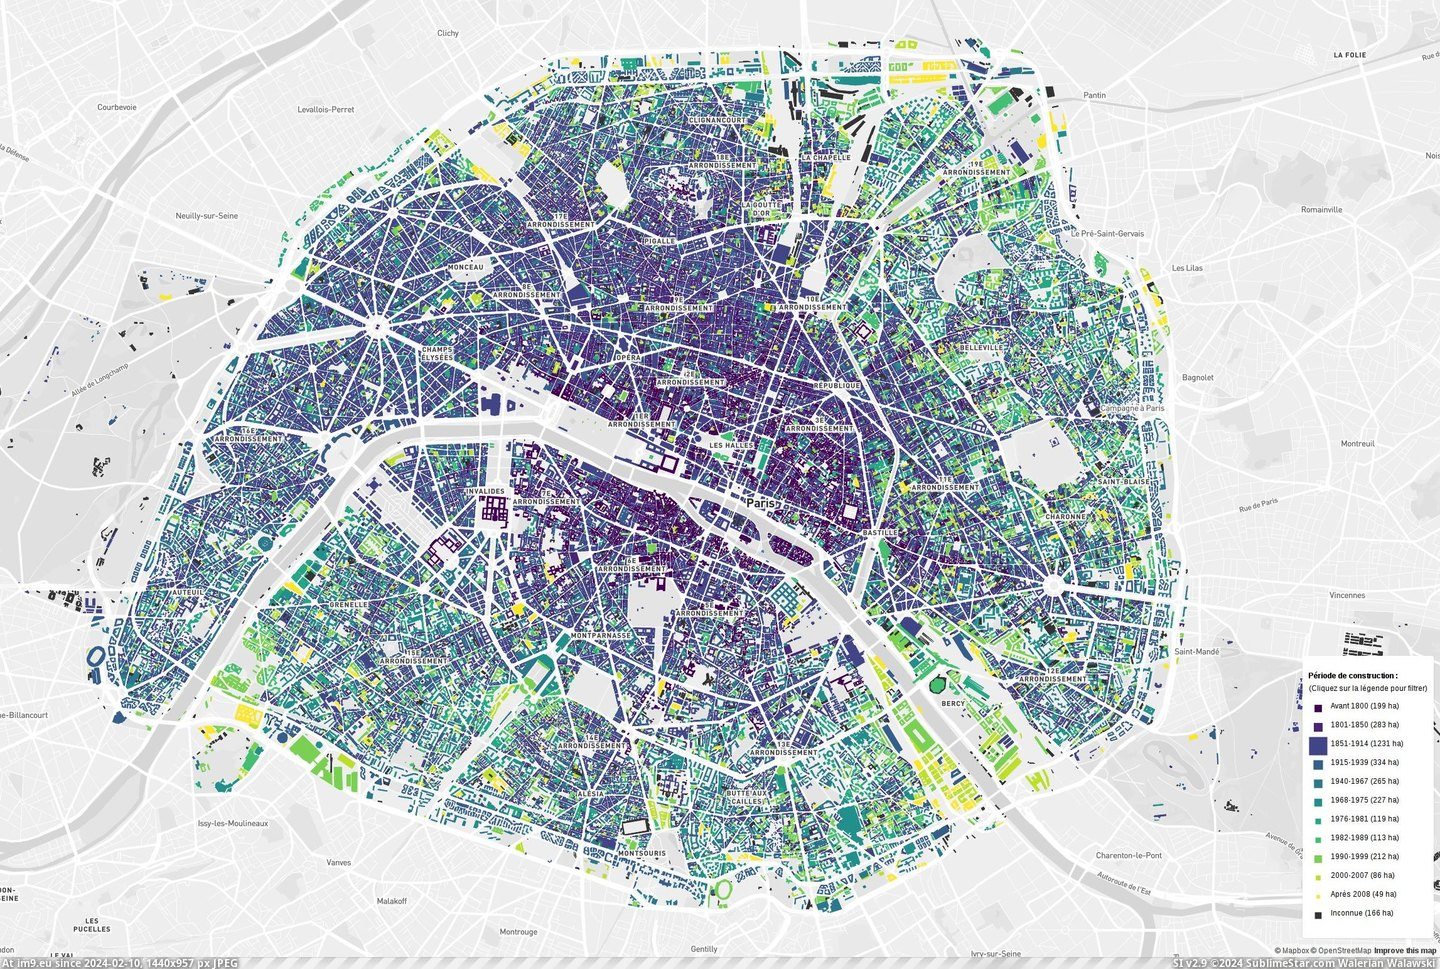 #Paris #Buildings #Construction [Mapporn] Paris buildings, by construction date [2294x1537] Pic. (Изображение из альбом My r/MAPS favs))